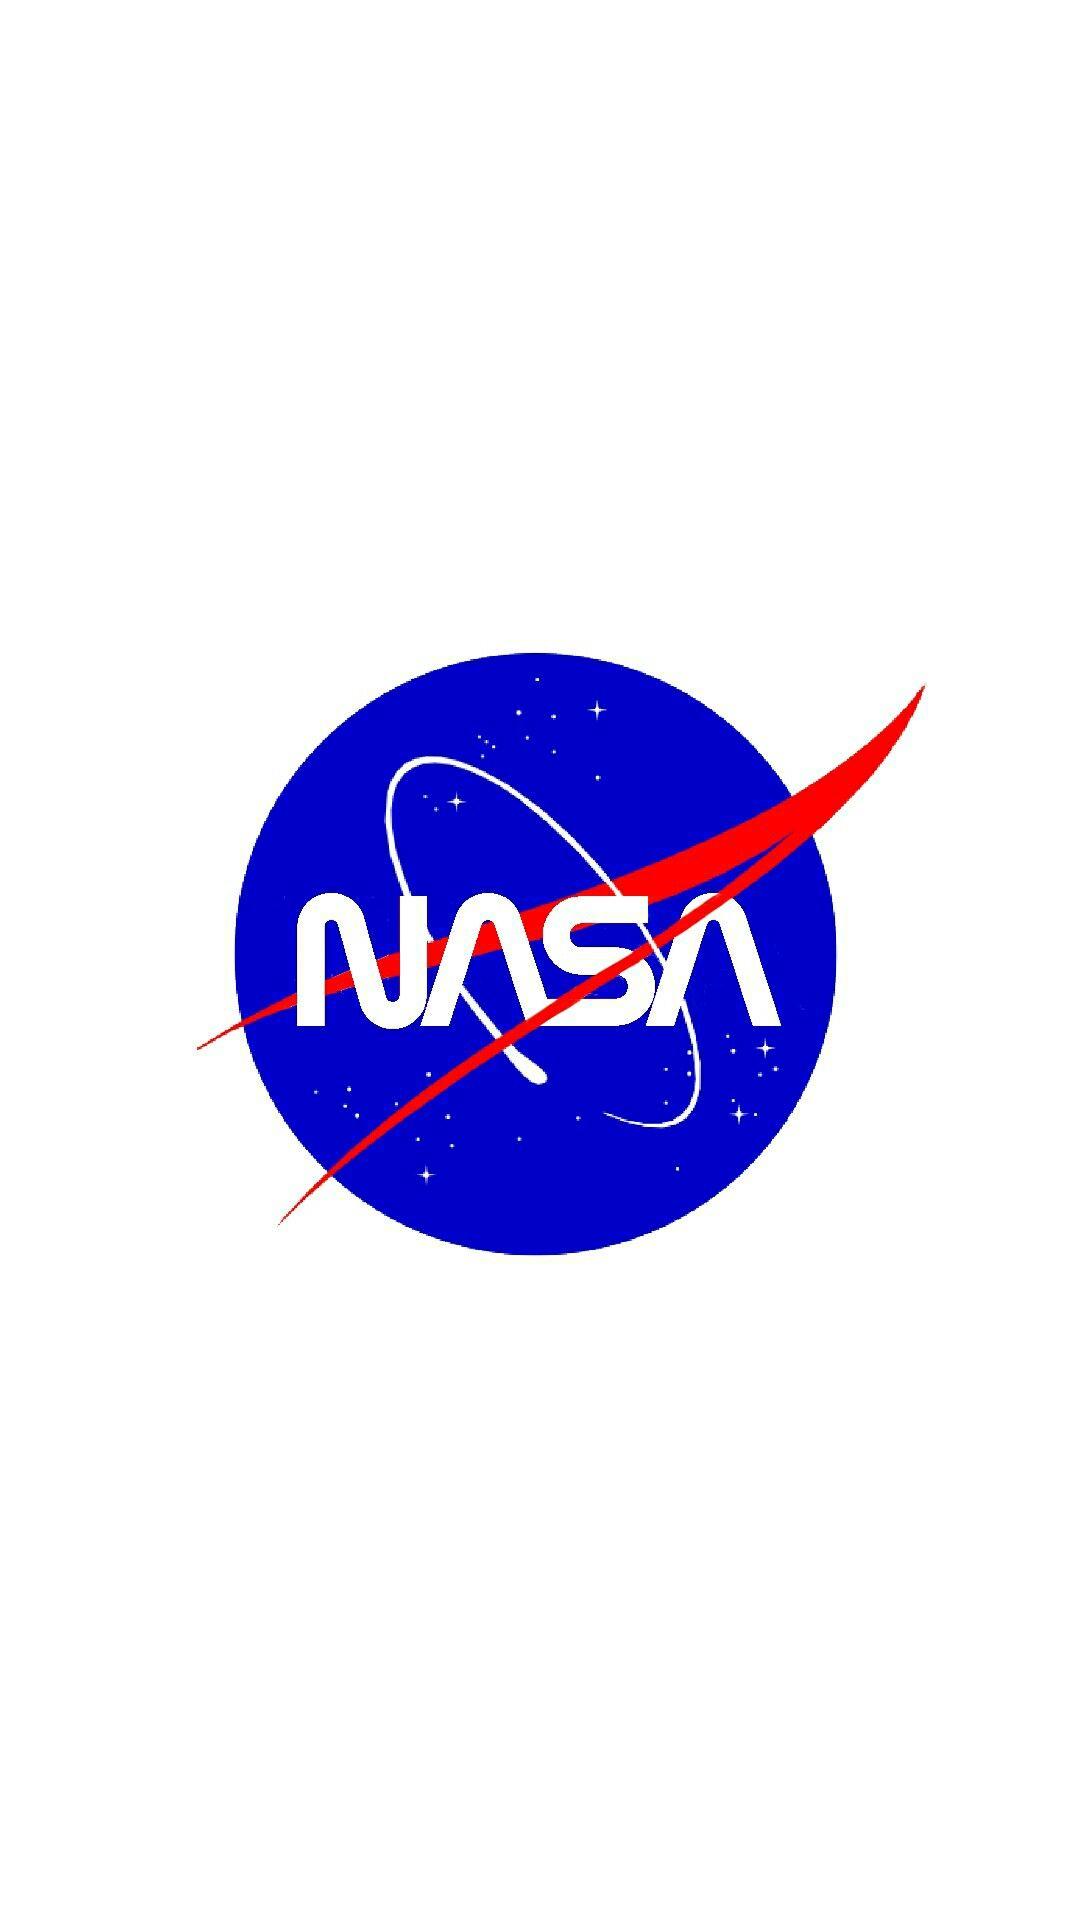 NASA New Logo - Nasa new logo #nasa #aesthetic #wallpaper #logo #wormlogo